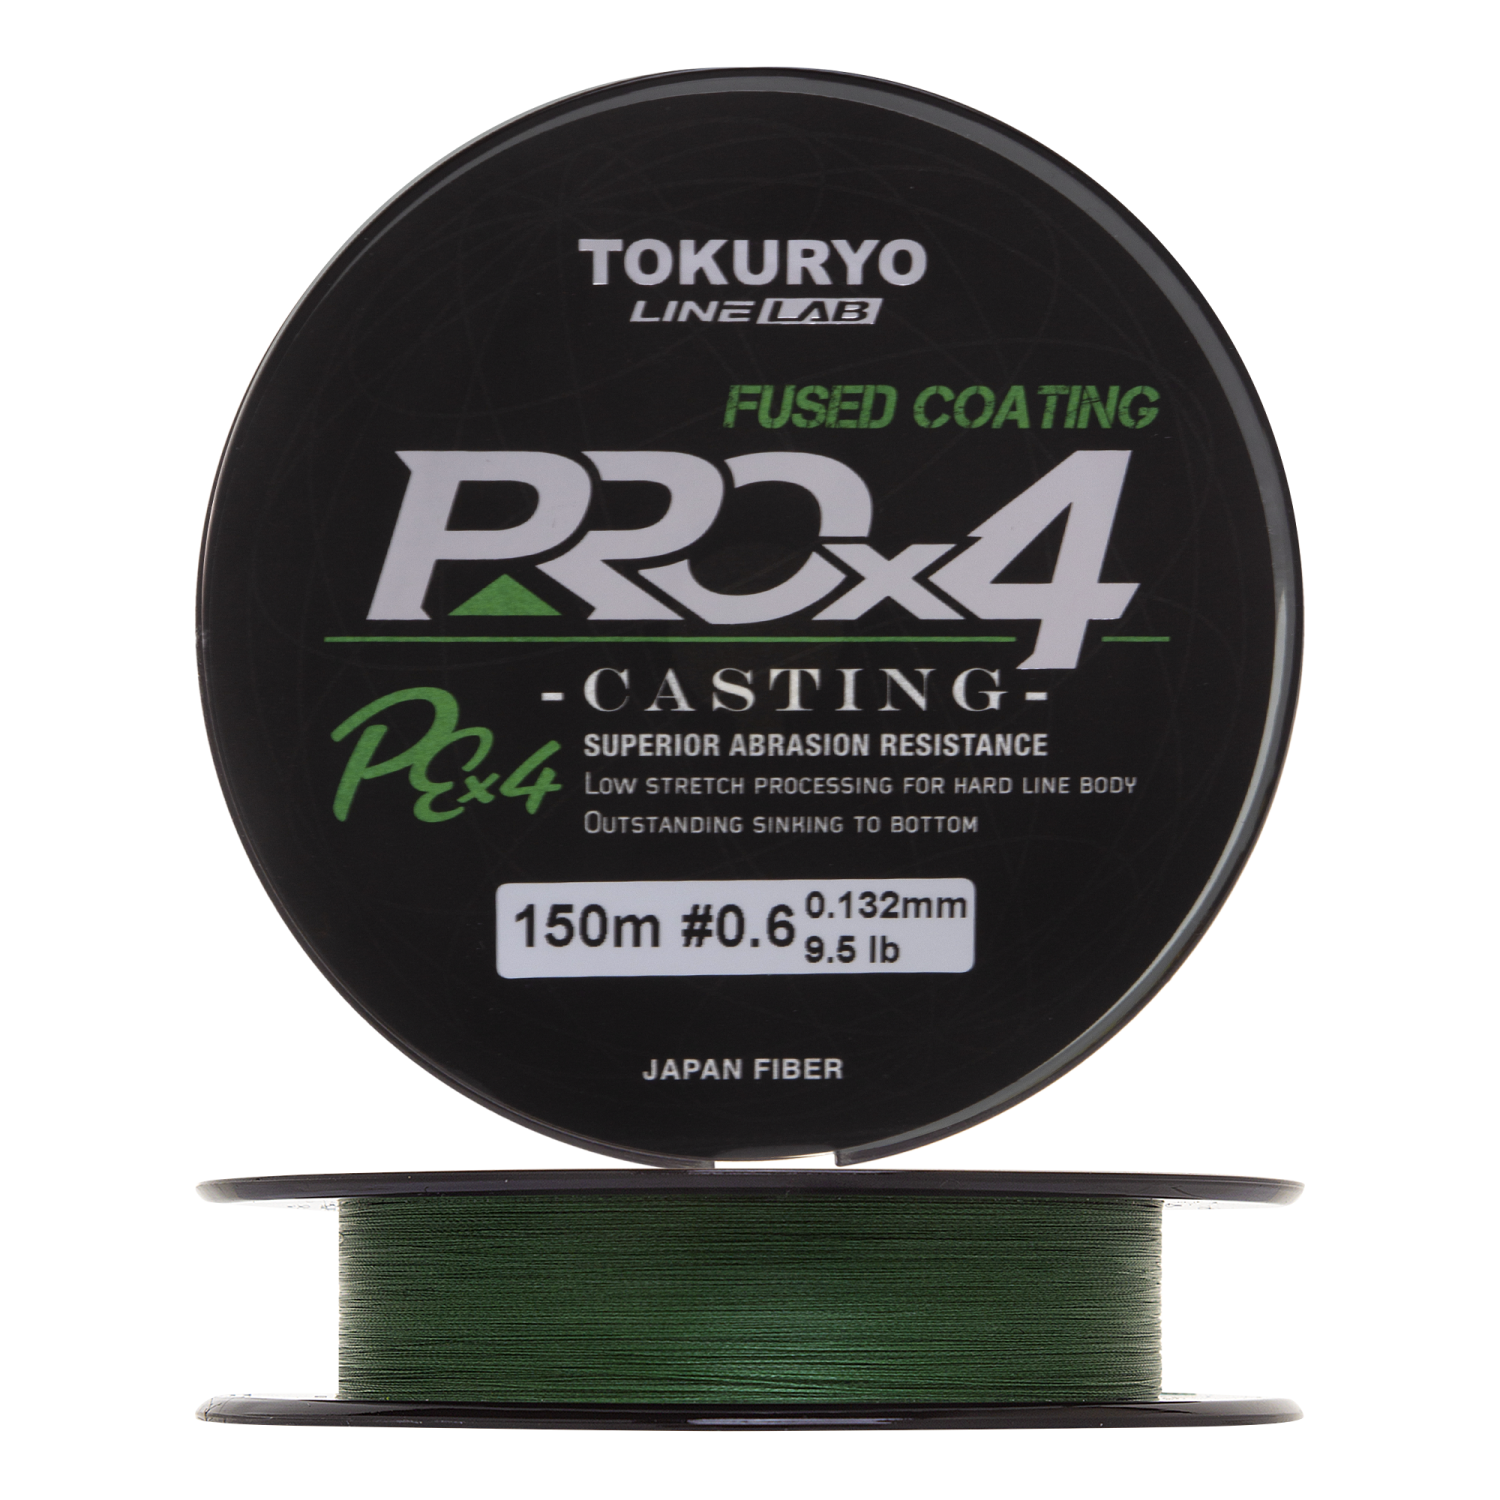 шнур плетеный tokuryo pro pe x4 0 8 0 153мм 150м dark green Шнур плетеный Tokuryo Pro PE X4 #0,6 0,132мм 150м (dark green)